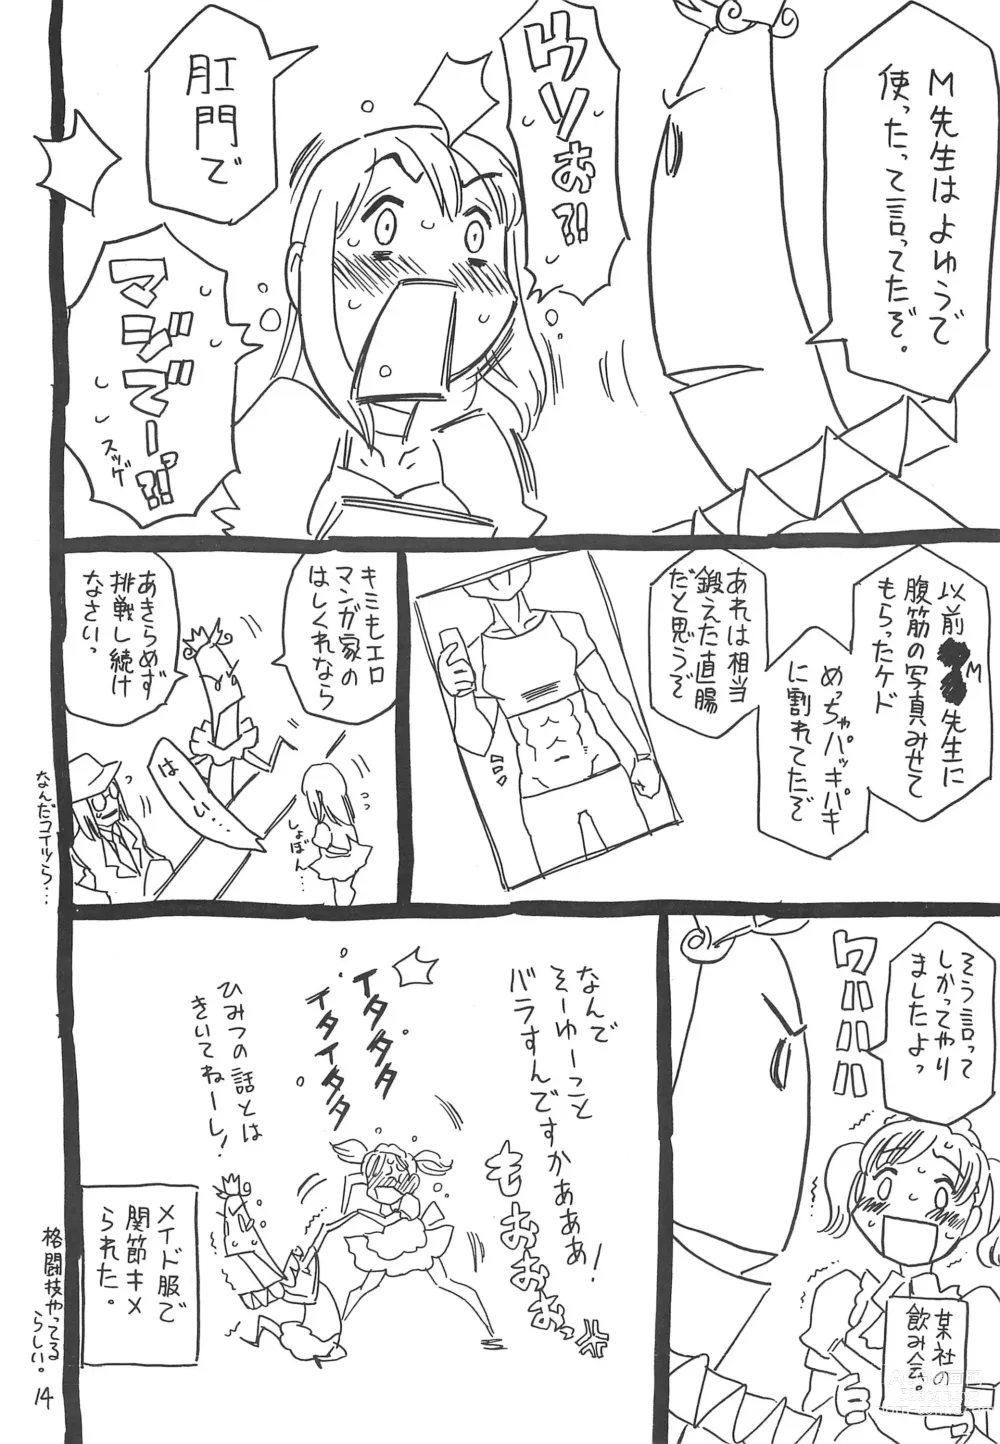 Page 14 of doujinshi Hyakka Shokkou Atopink